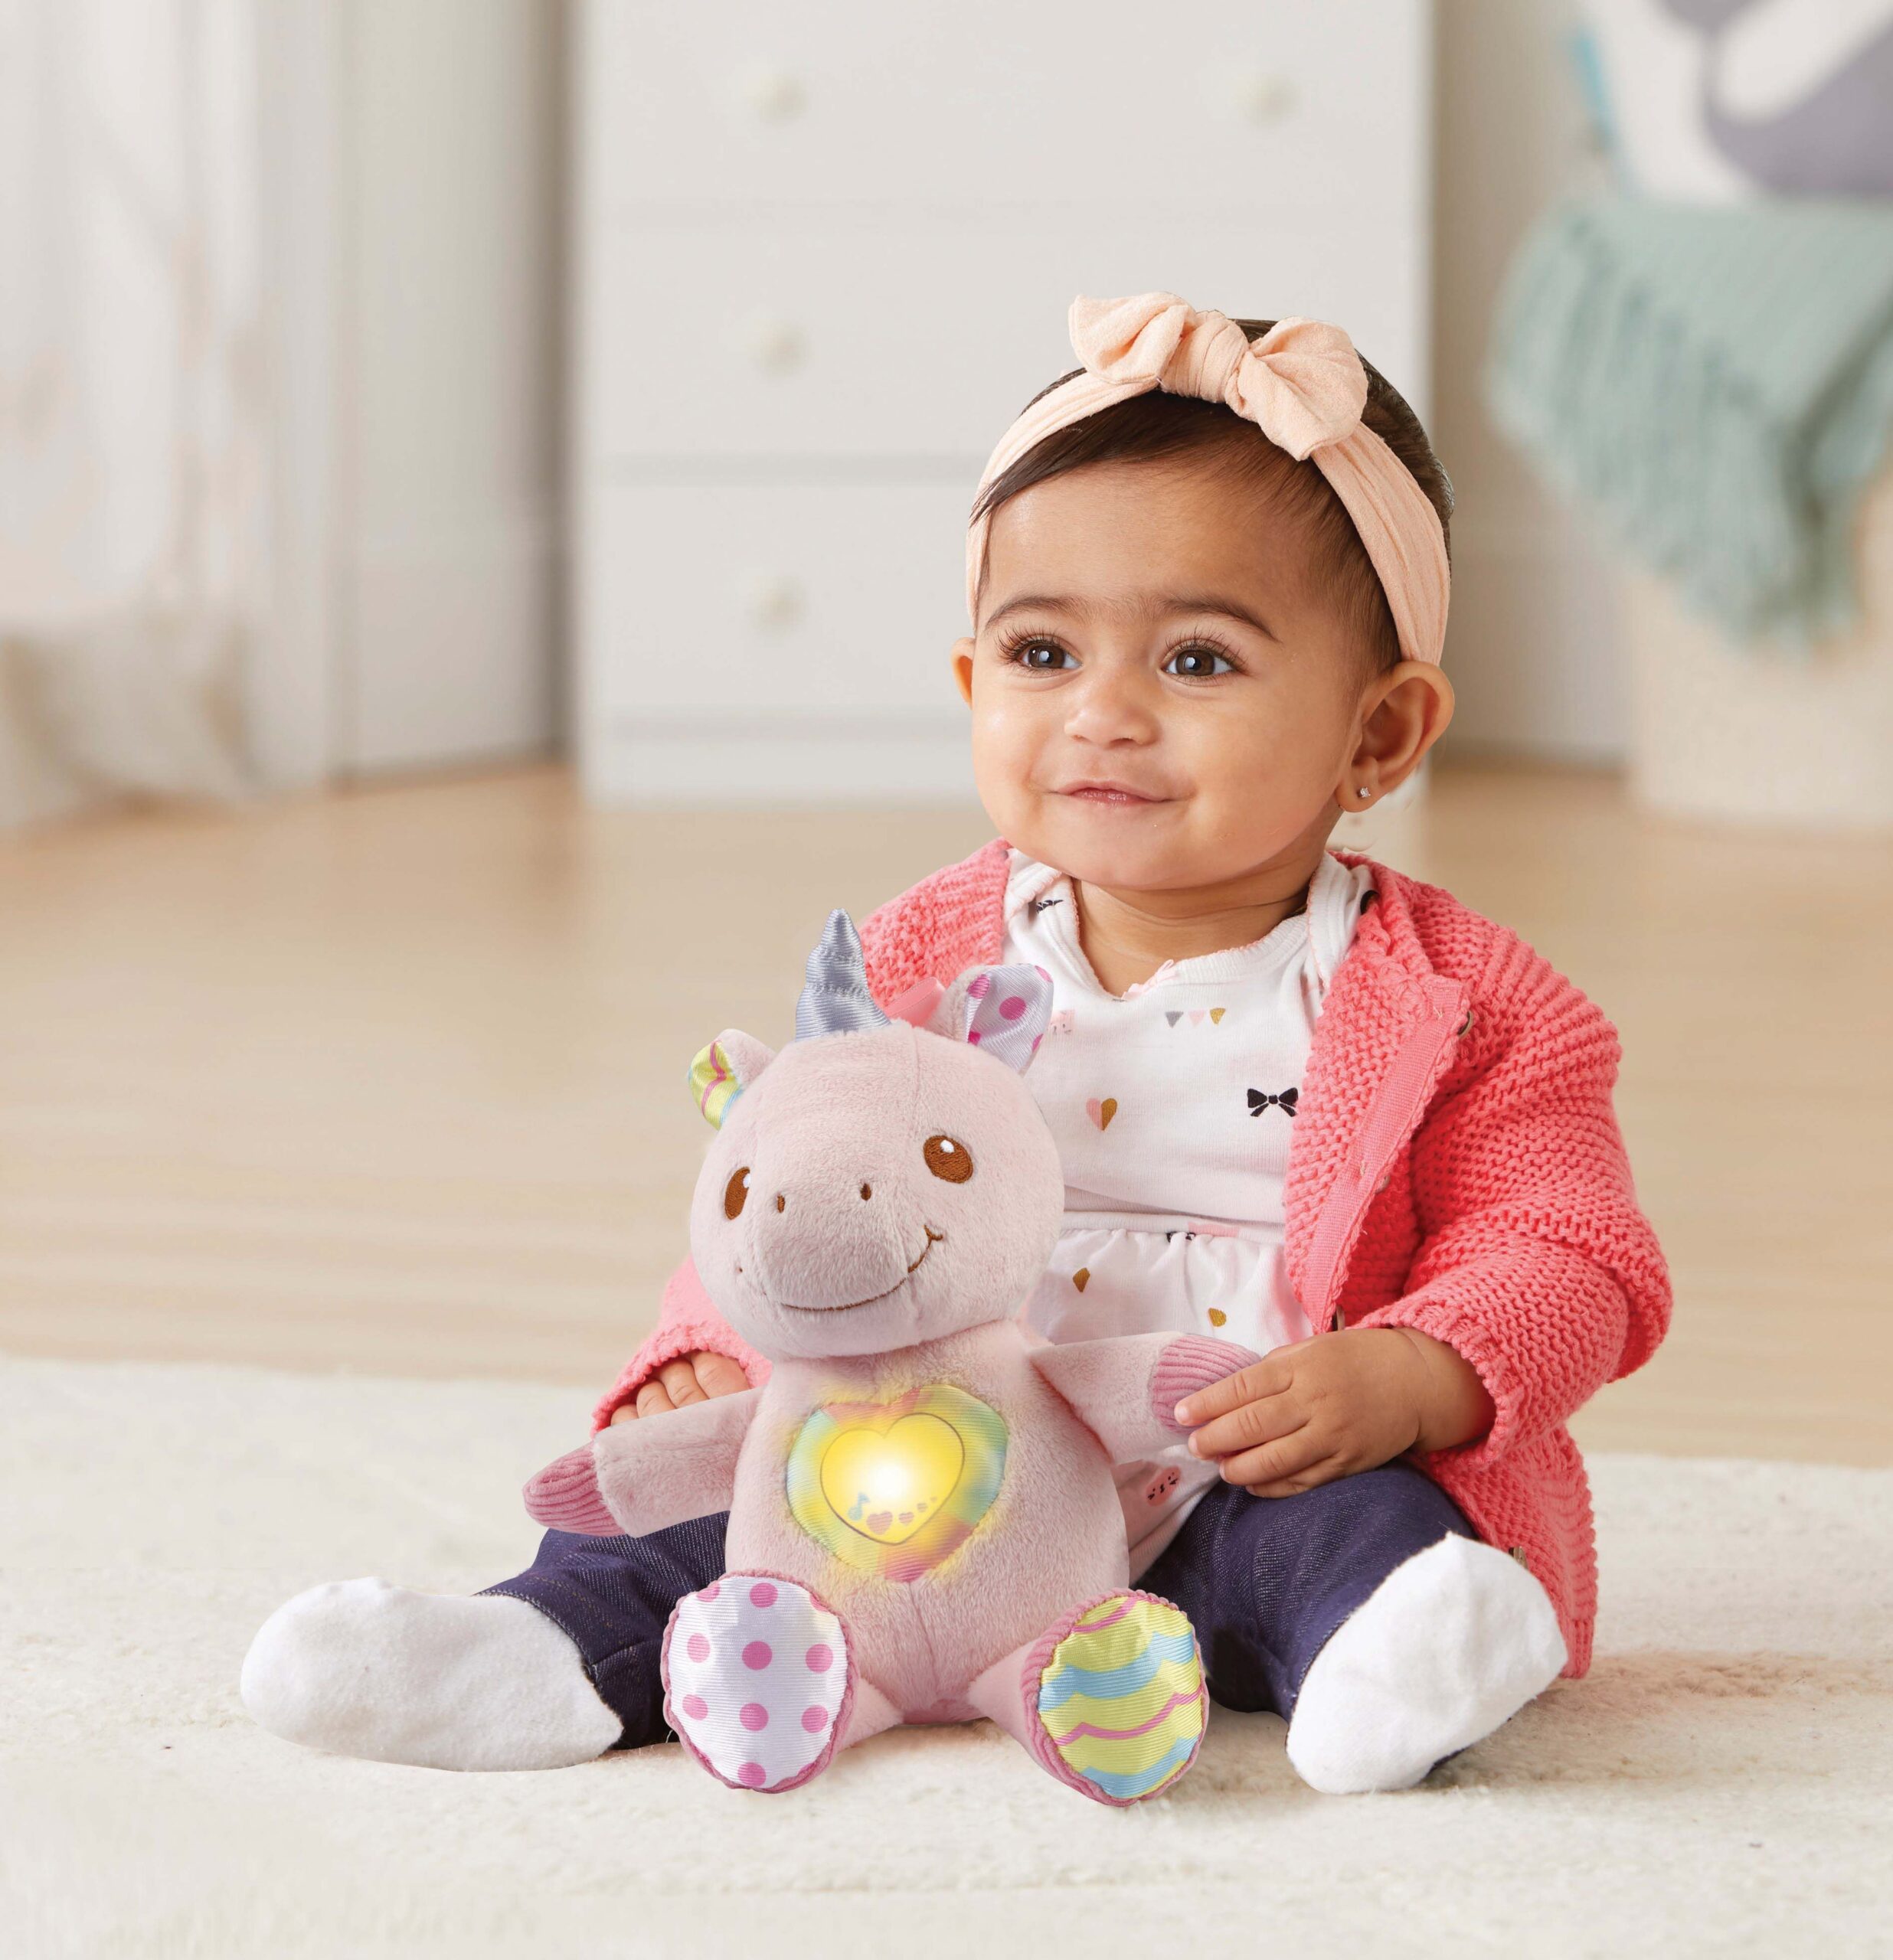 uitvinden volume Rusteloosheid Sponsored - Hoe kies ik geschikt speelgoed voor mijn baby?